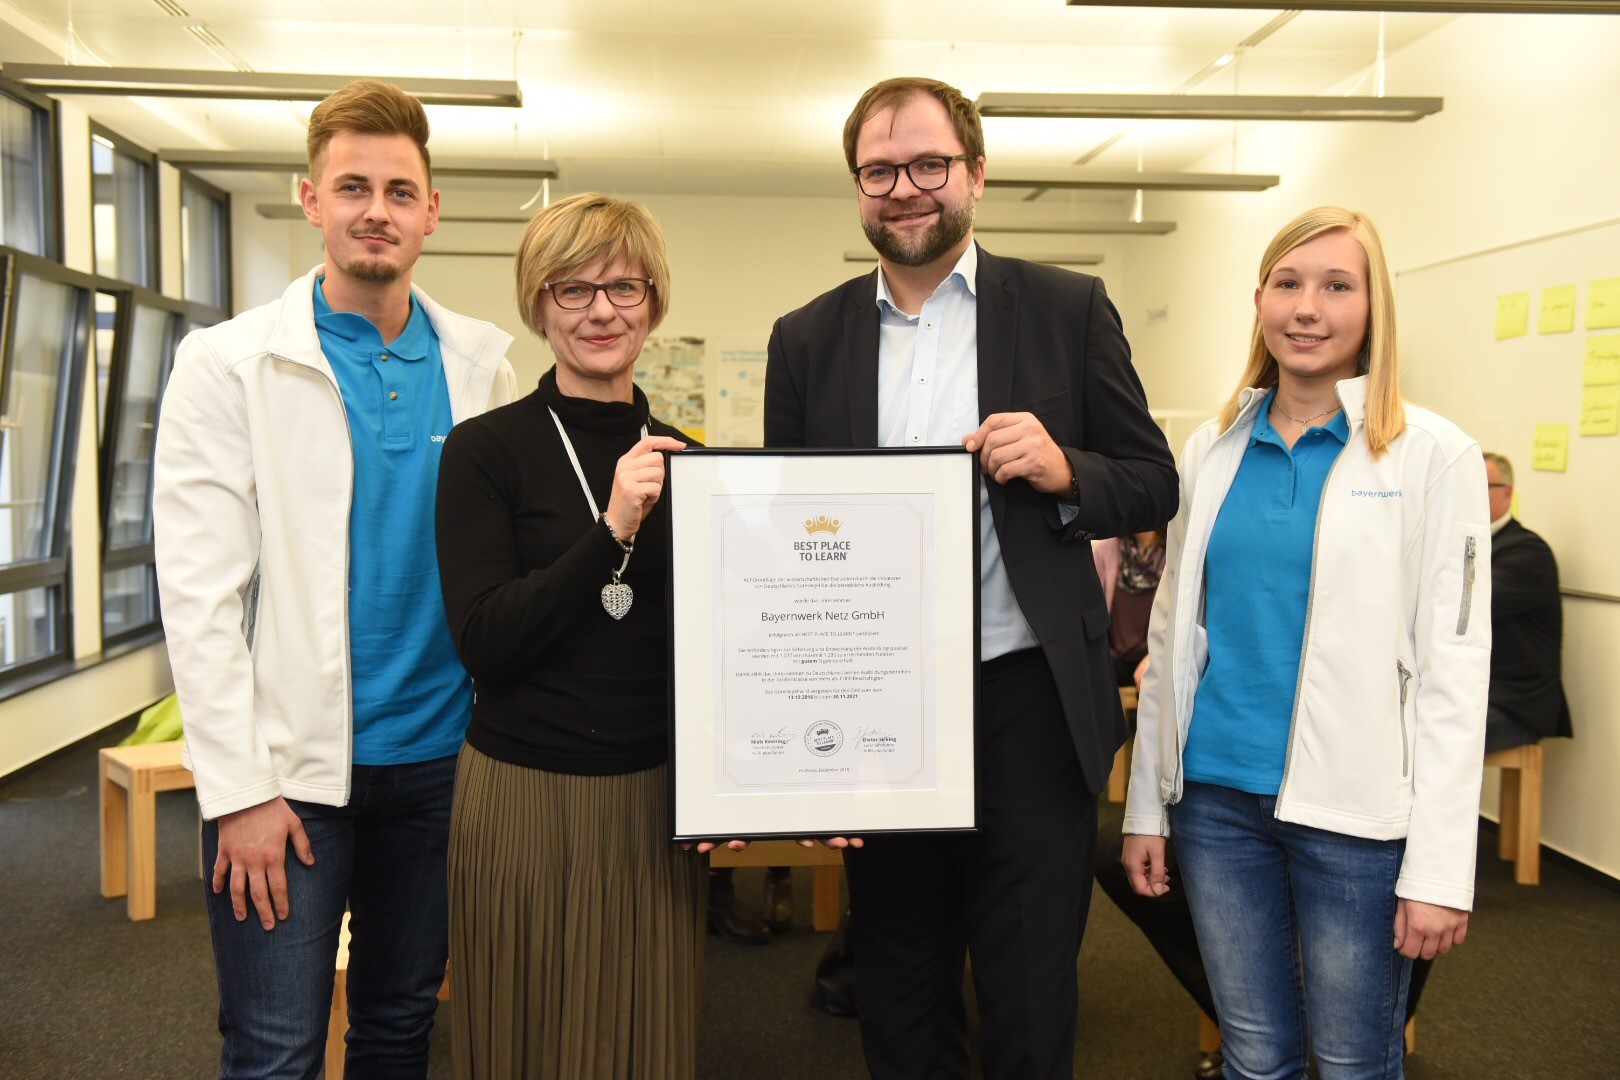 Beate Rubenbauer (2.vl.), Personalleiterin Bayernwerk Netz GmbH, nimmt das Zertifikat von Niels Köstring (3.vl.), Geschäftsführer von AUBI-plus, entgegen.